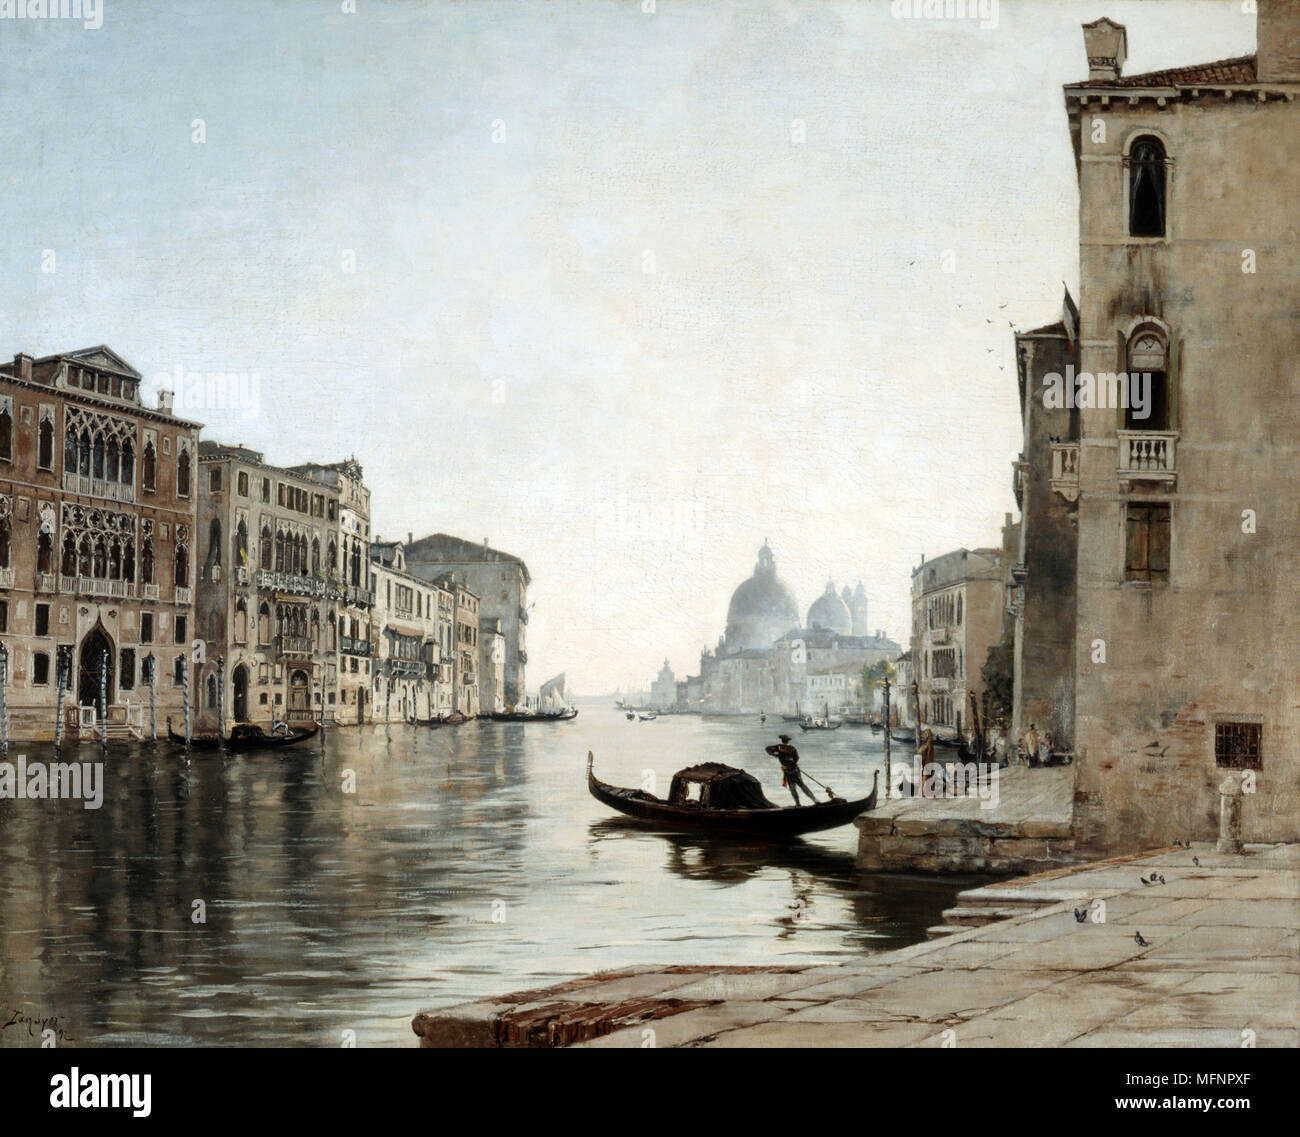 - Télécabine de Venise sur le Grand Canal", octobre 1892. Huile sur toile. Emmanuel Lansyer (1835-1893), peintre paysagiste français. Vue en regardant la Salute. L'eau de l'Italie Banque D'Images